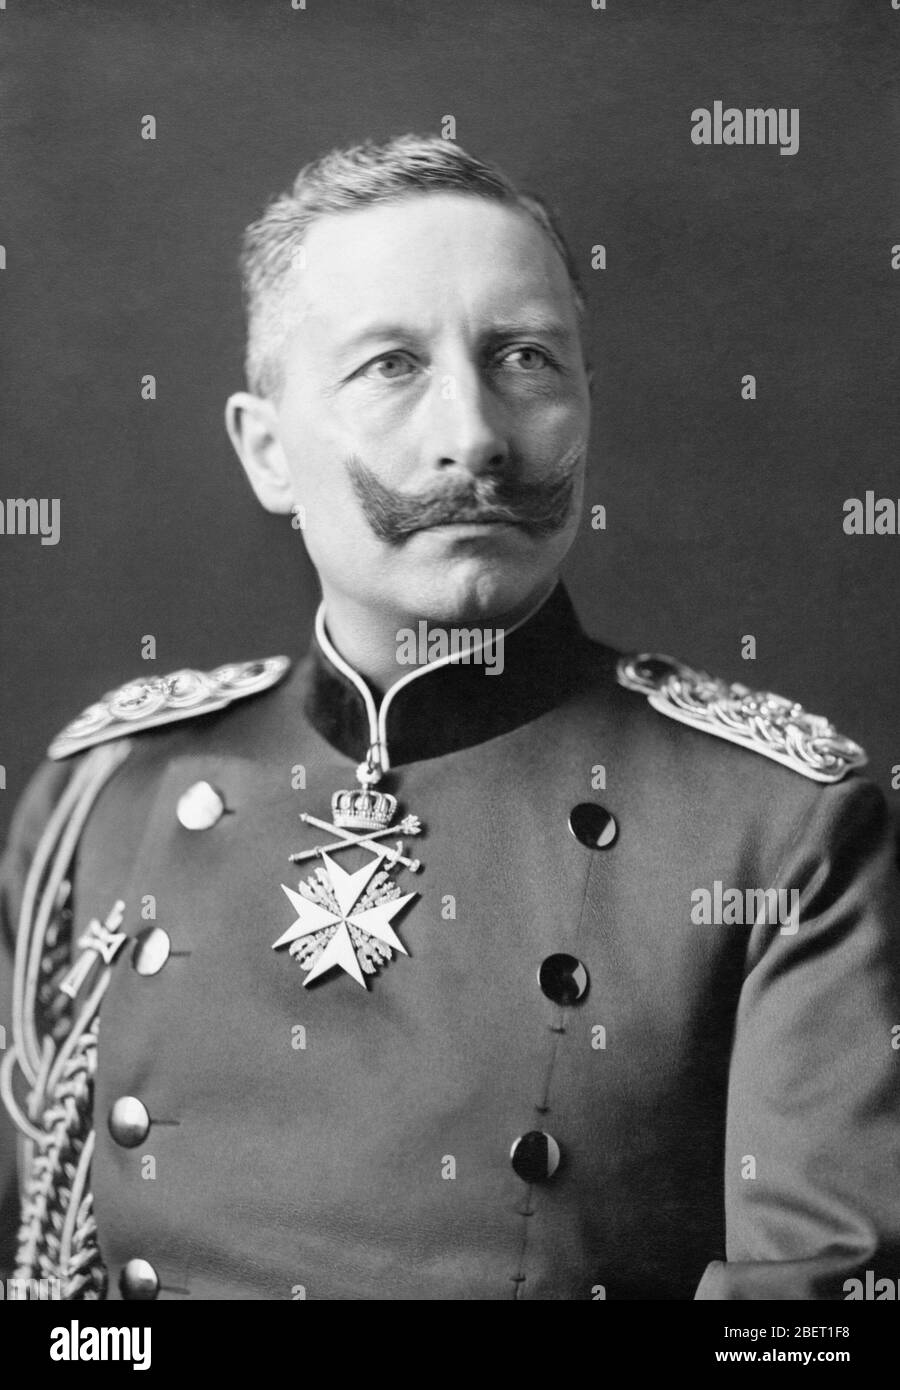 Porträt Kaiser Wilhelms II., Kaiser von Deutschland und König von Preußen, aufgenommen 1902. Stockfoto